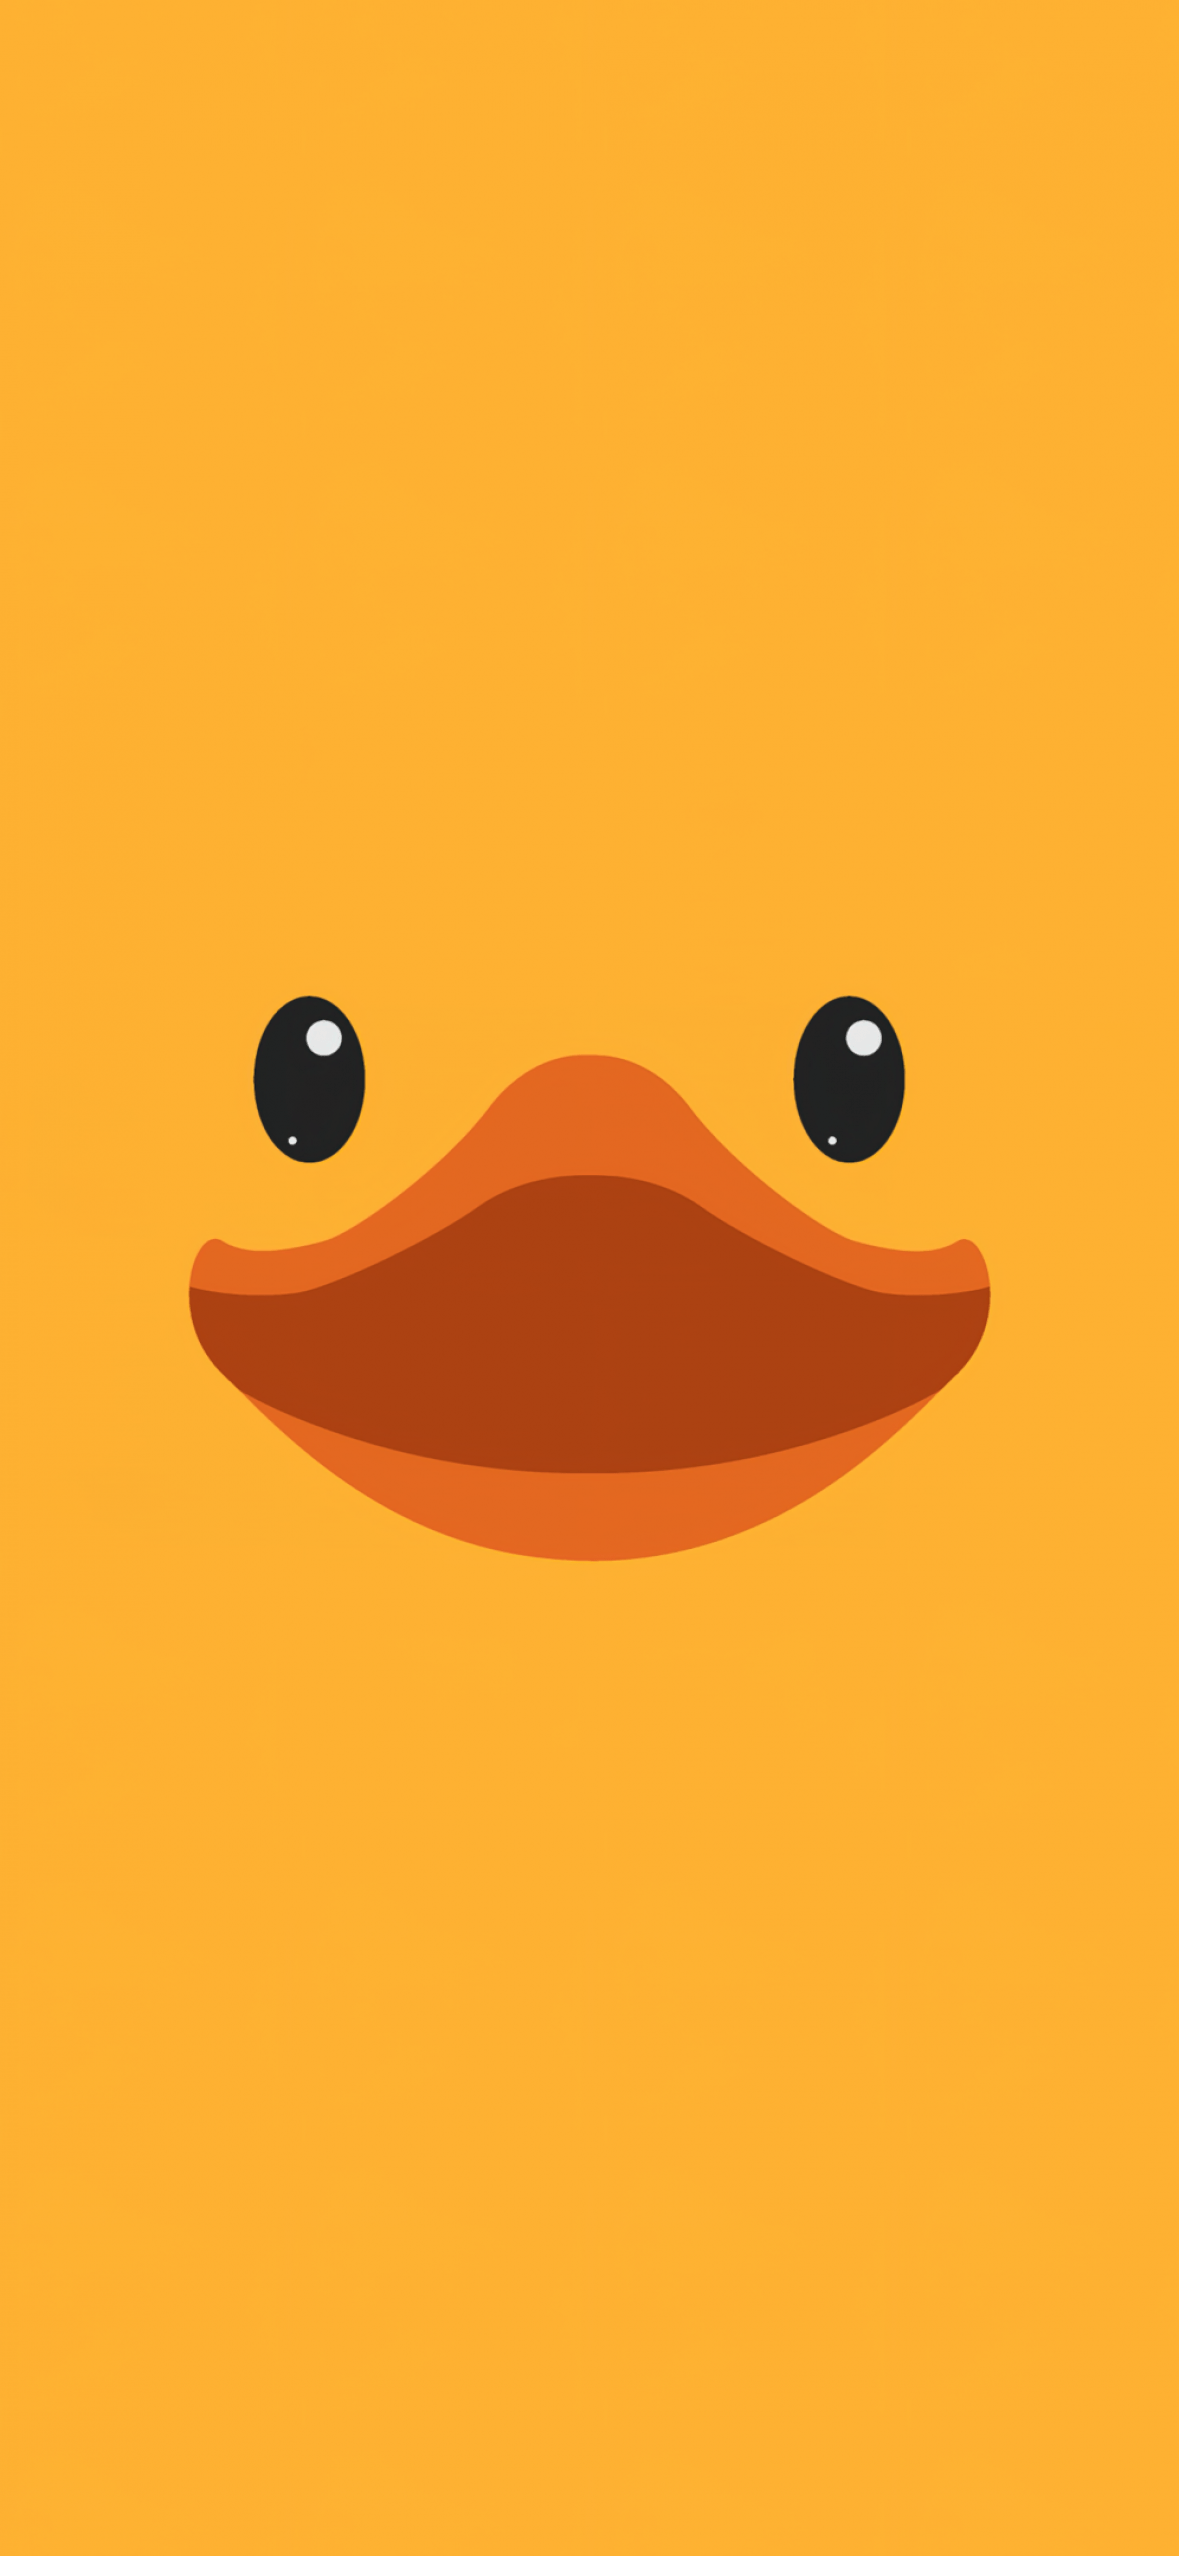 Cute duck Wallpaper 4K, Rubber Ducky Day, Duck face